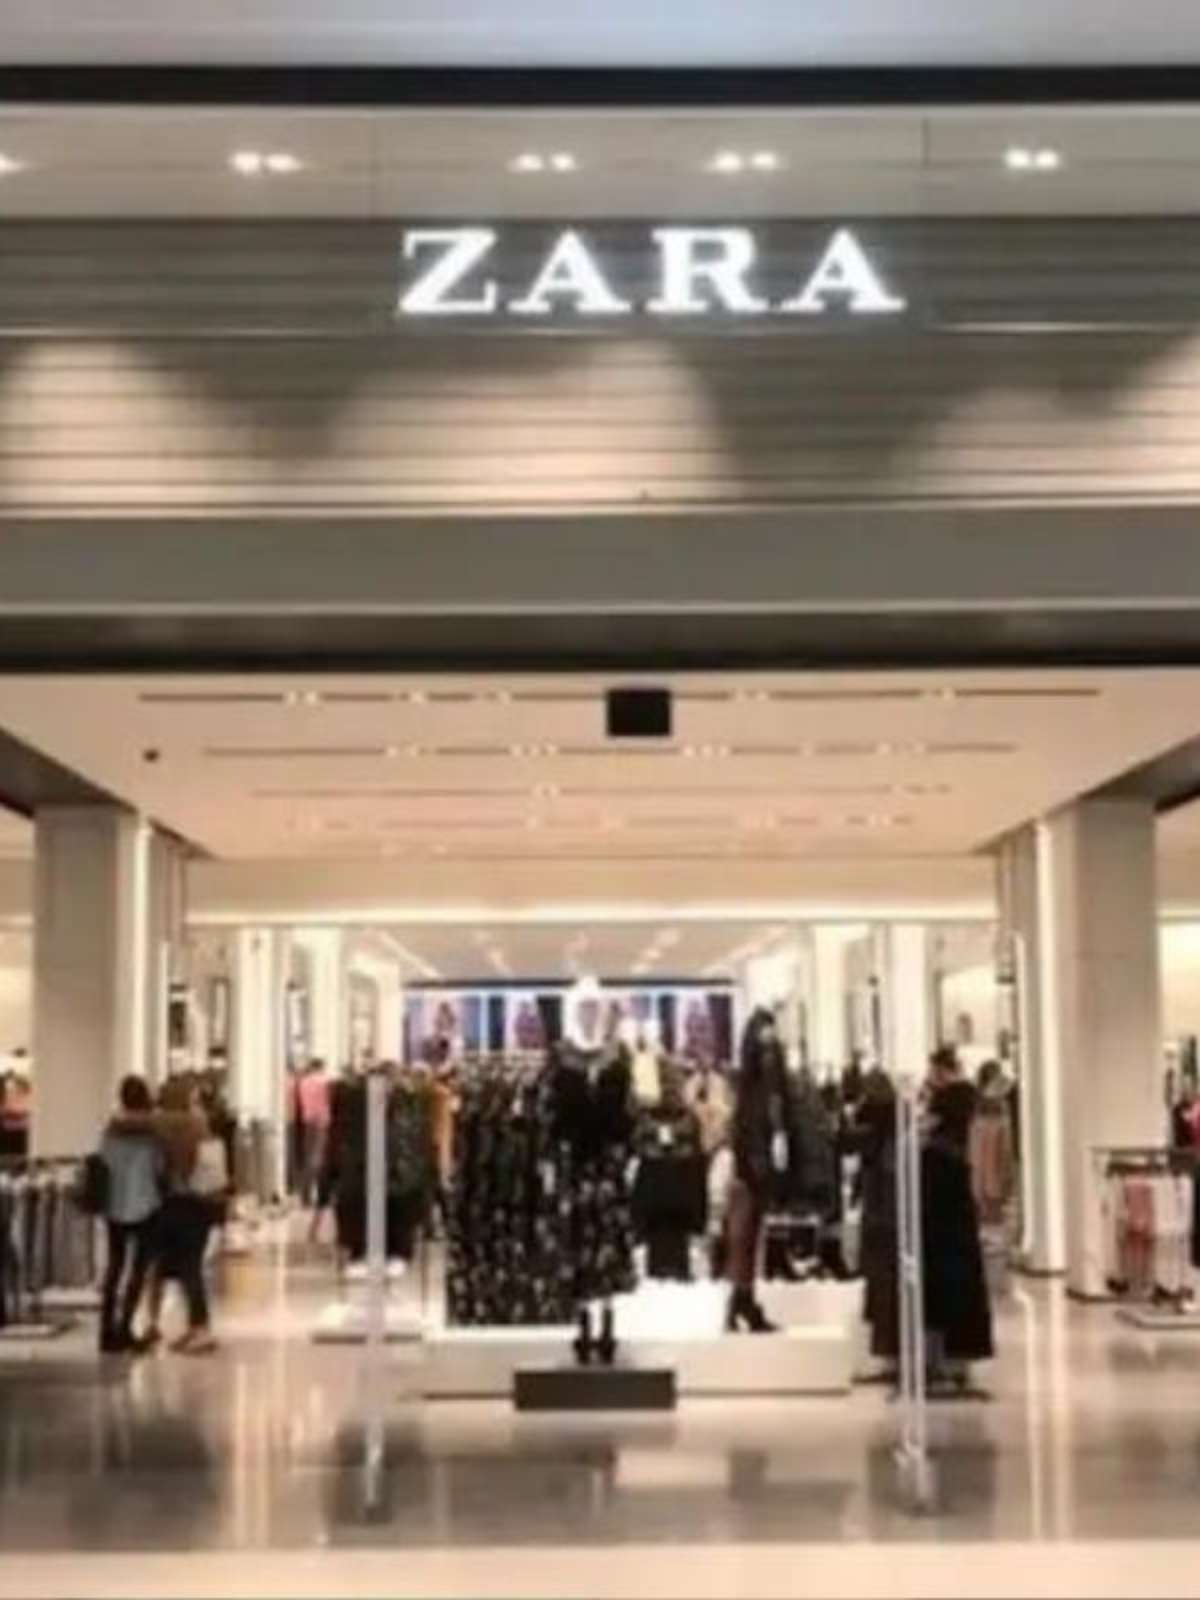 Dona da Zara aumenta vendas online e acelera fecho de lojas em Espanha -  Comércio - Jornal de Negócios